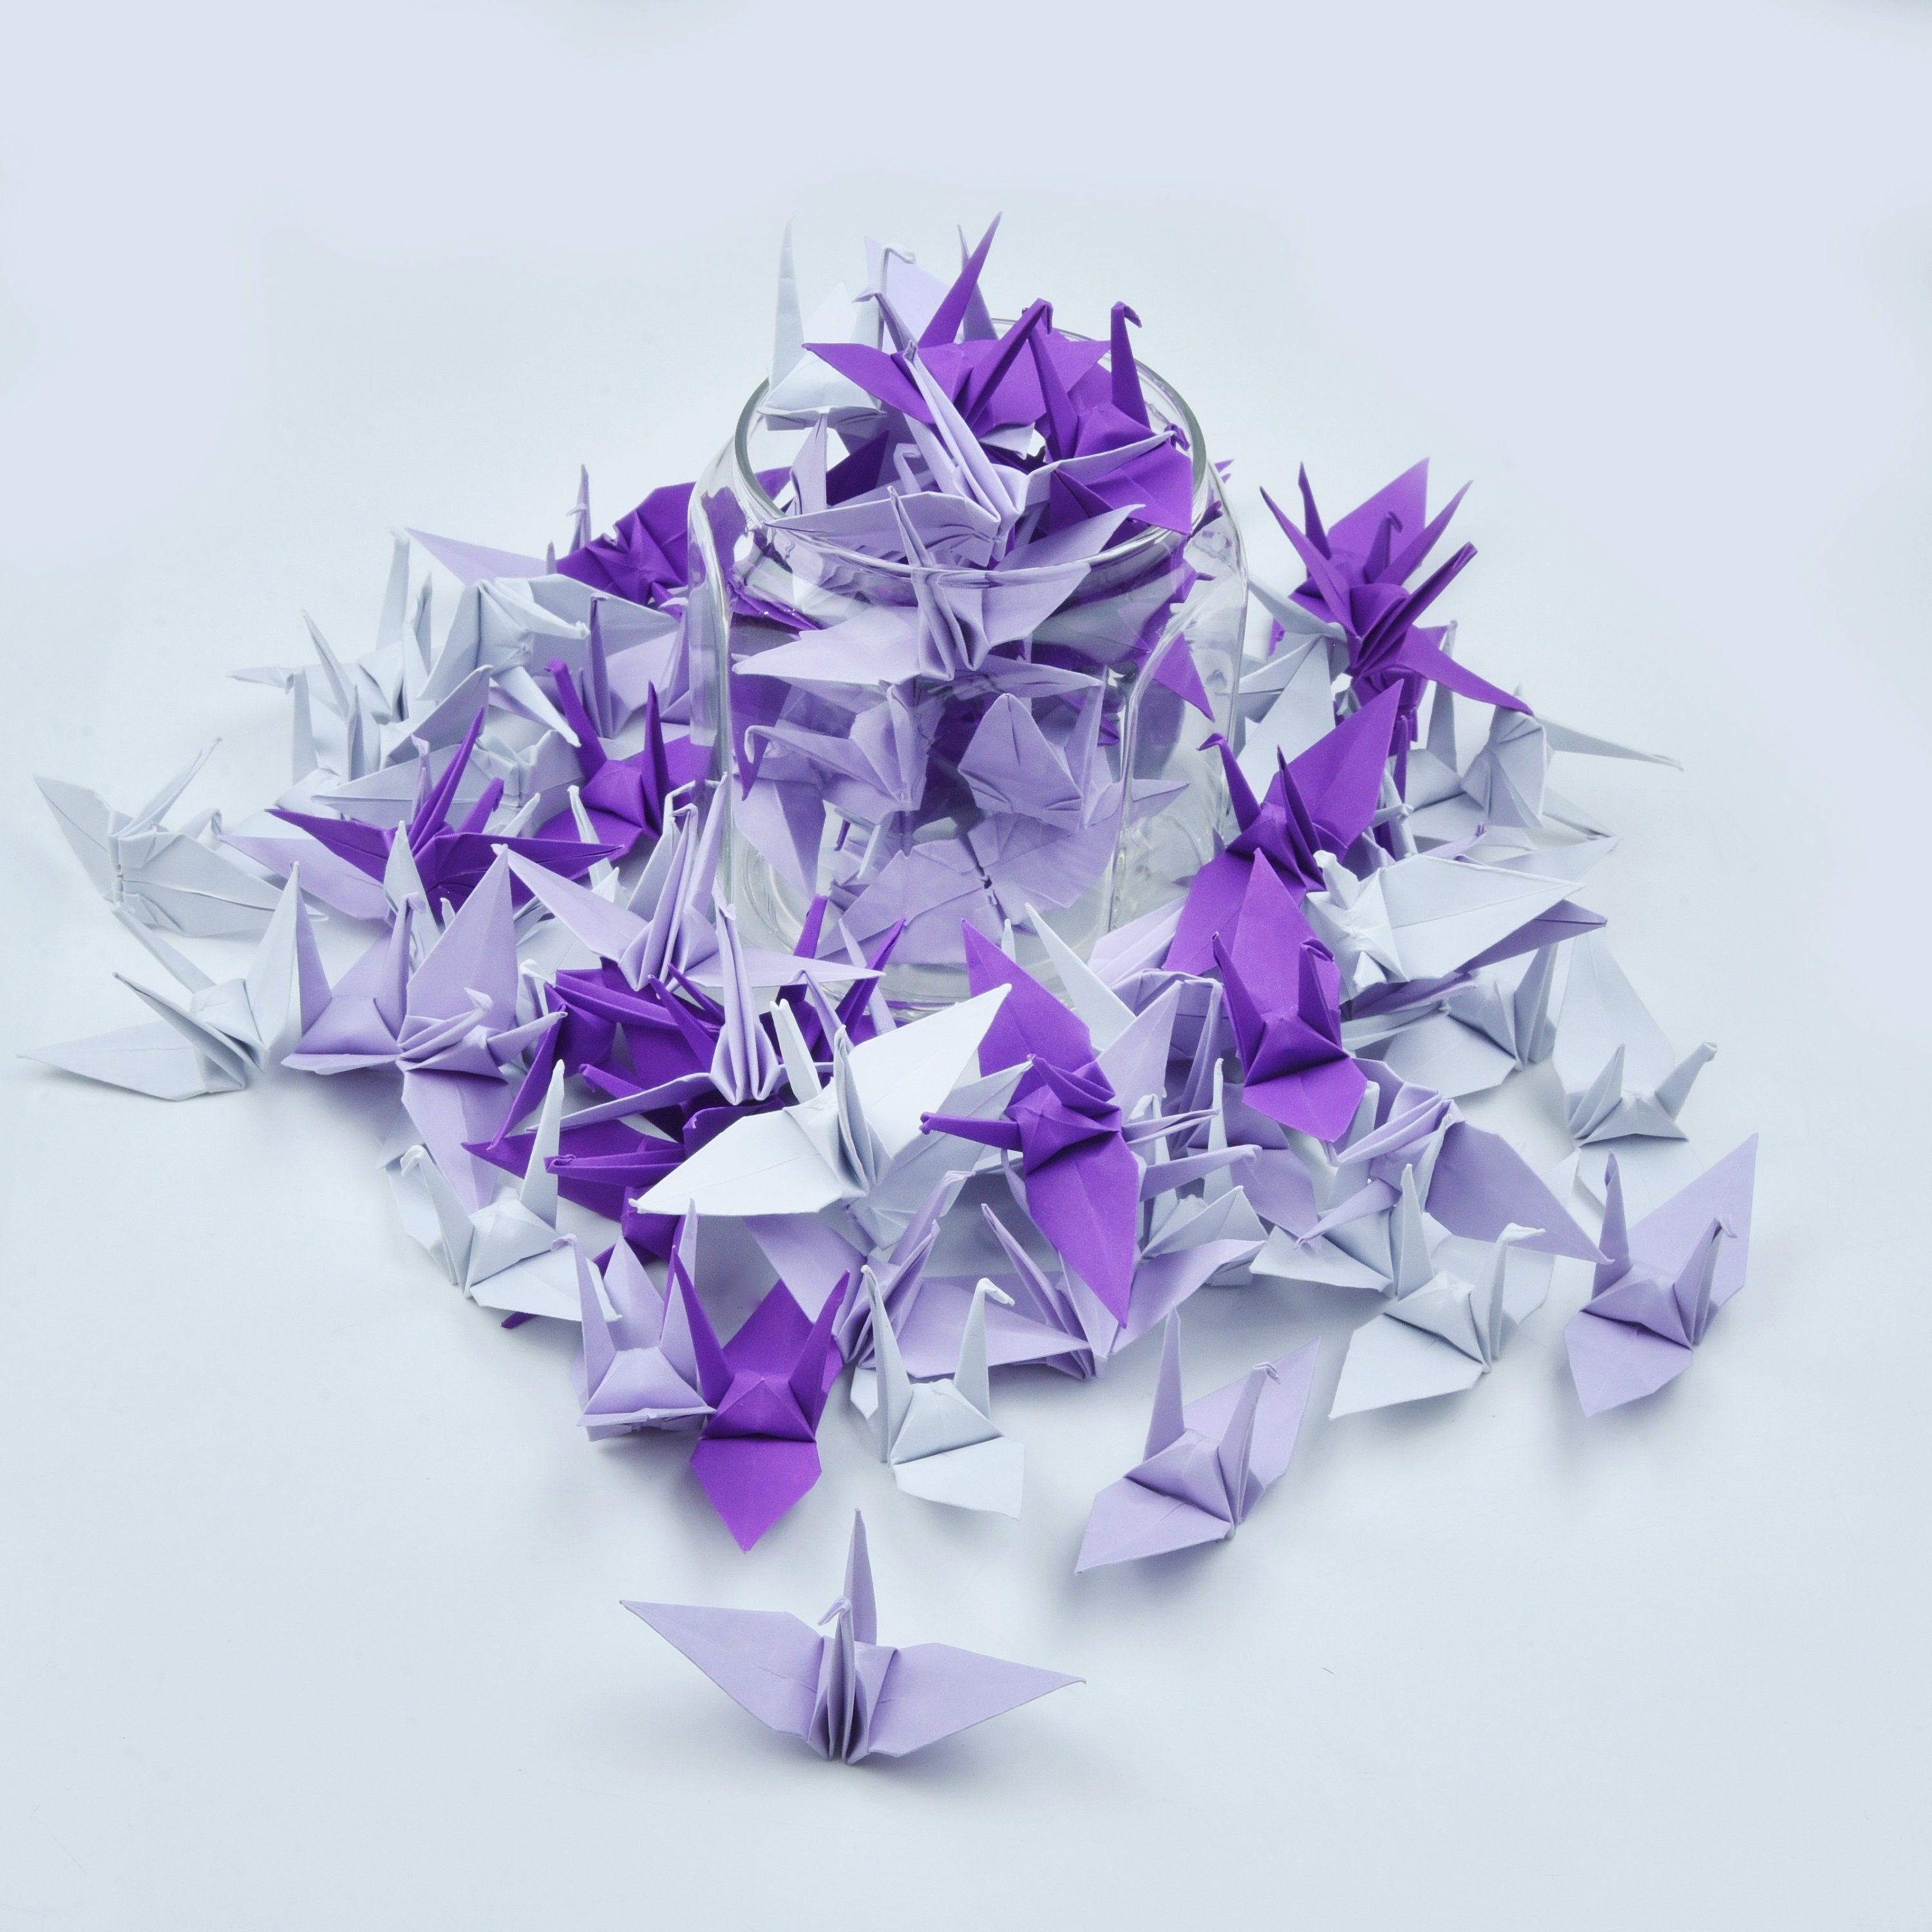 1000 Grúa de papel de origami tono púrpura - 3x3 pulgadas - Prefabricado - Grúa de origami para decoración de bodas, regalo de aniversario, San Valentín, telón de fondo